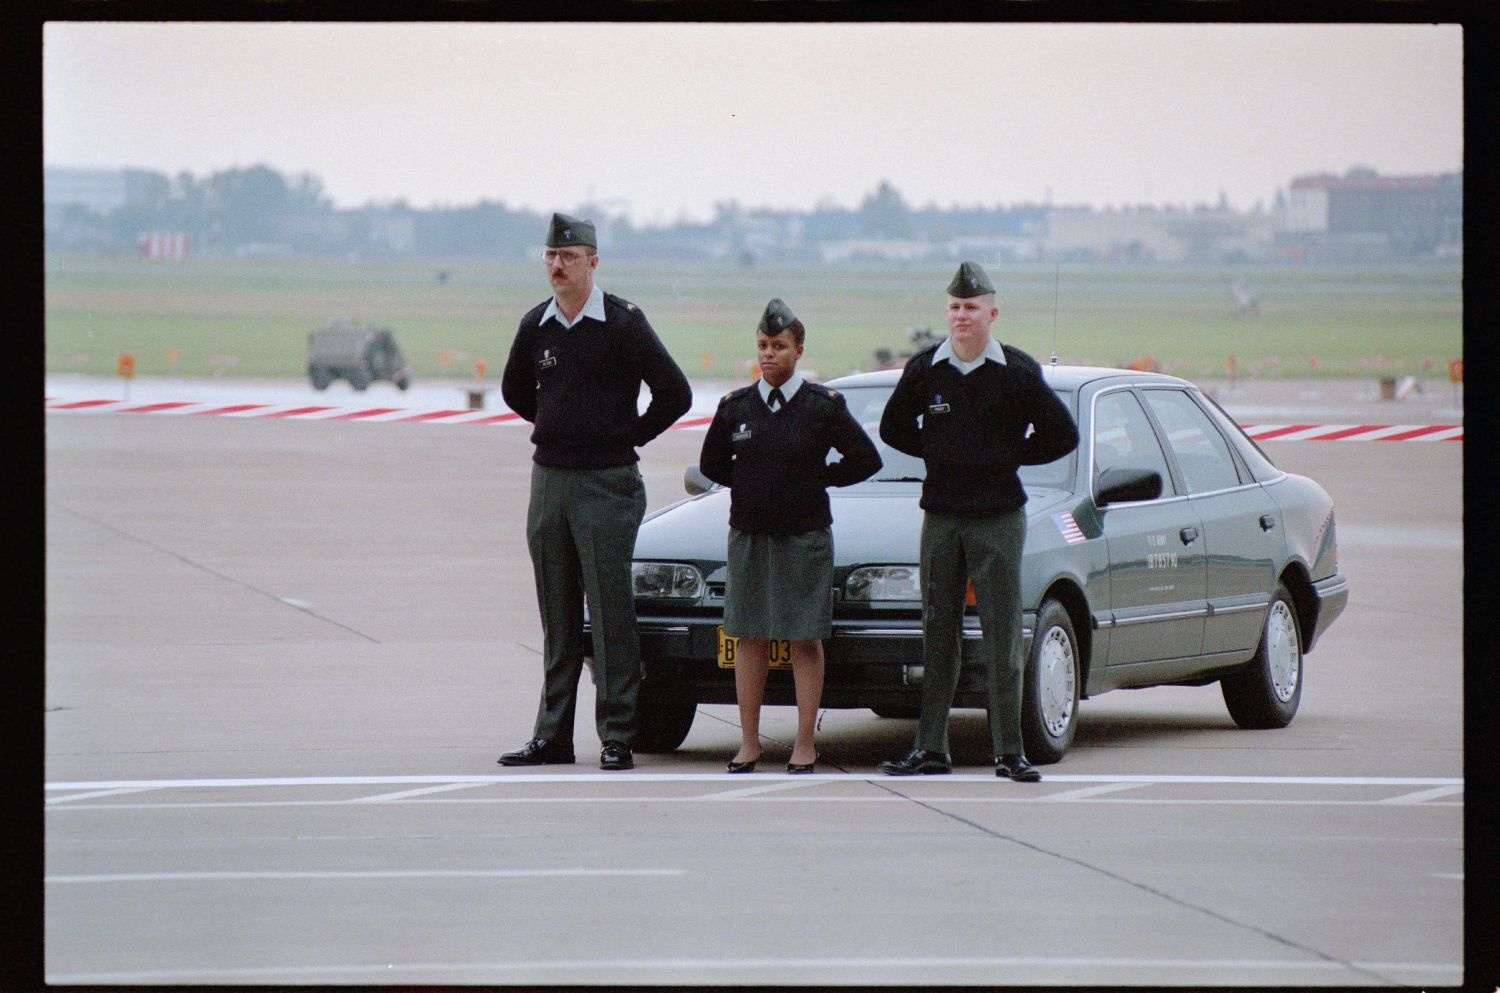 Fotografie: Militärische Zeremonie zur Einstellung der Operation Larkspur auf der Tempelhof Air Base in Berlin-Tempelhof (AlliiertenMuseum/U.S. Army Photograph Public Domain Mark)